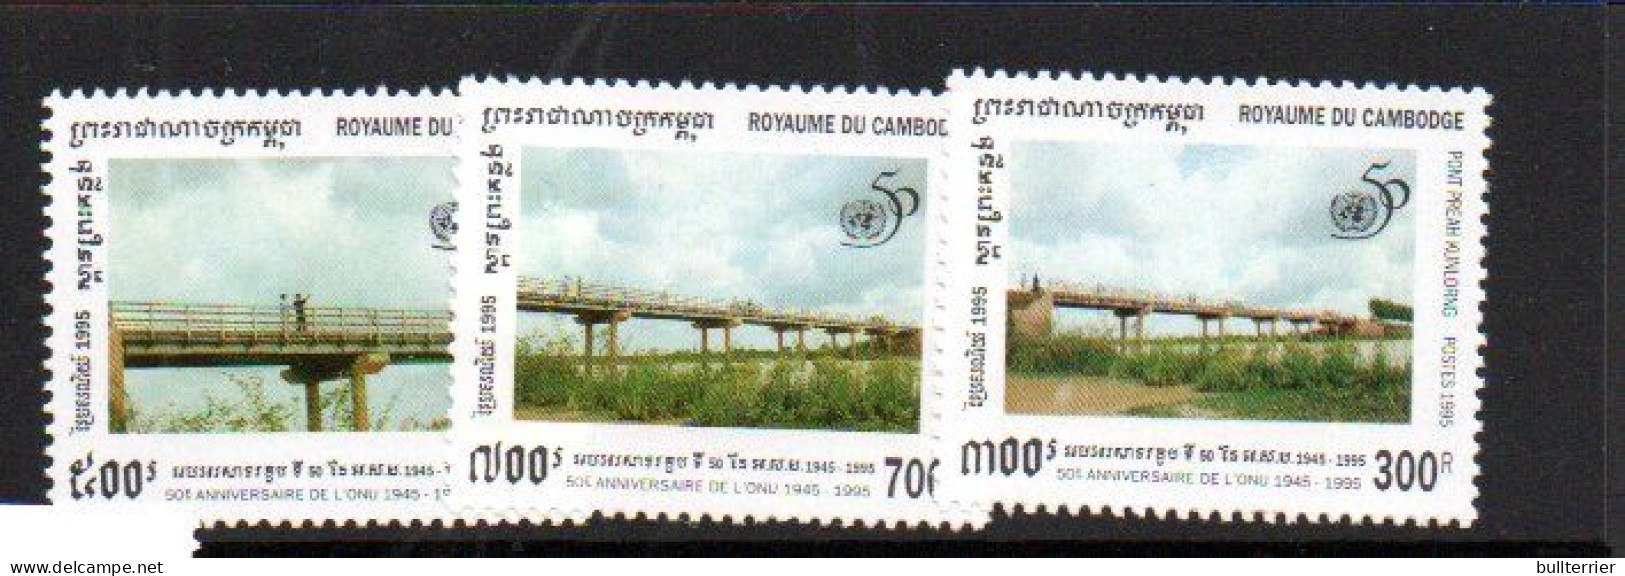 CAMBODIA -  1995 - UNITED NATIONS / BRIDGES SET OF 3 MINT NEVER HINGED - Cambodia